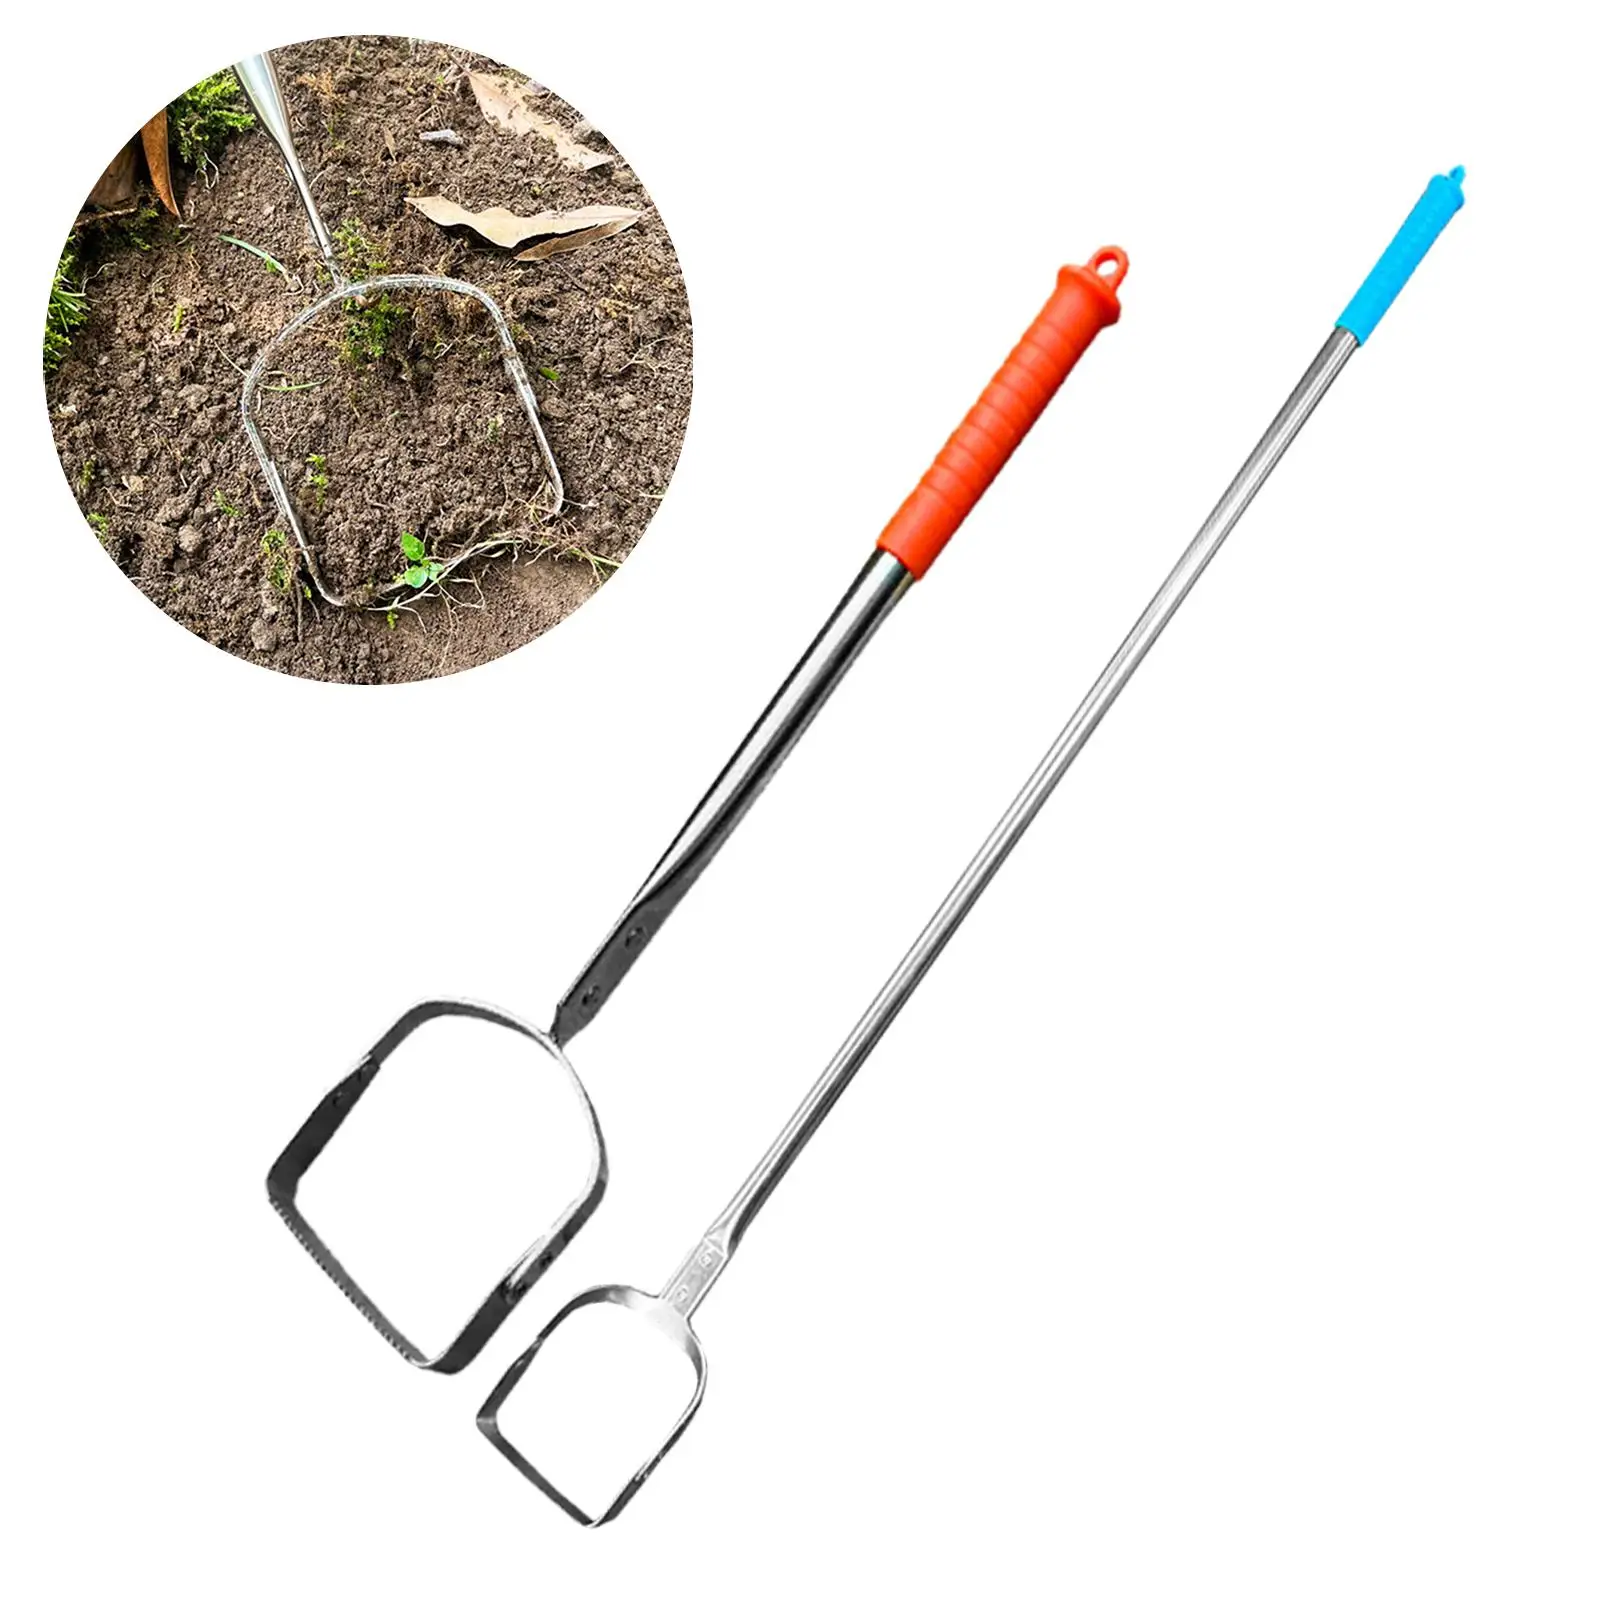 Garden Hoe Tool Durable Long Handle Handheld Loop Hoe Weeding Rake for Planting Loosening Soil Weeding Farm Vegetables